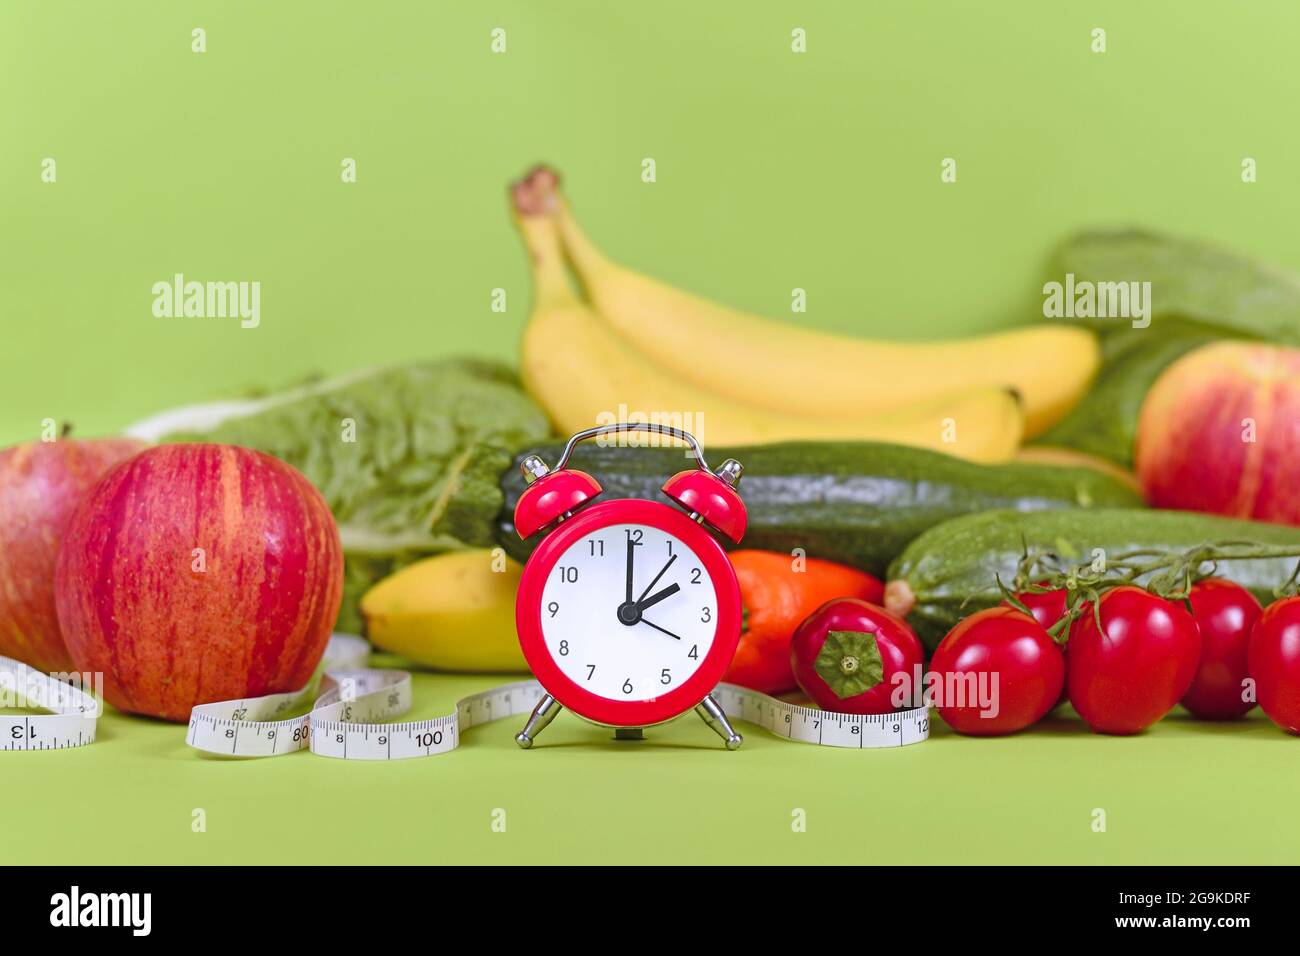 Concept de régime pour perdre du poids avec seulement manger des aliments sains à certains moments avec des légumes, des fruits, du ruban de mesure et de l'horloge Banque D'Images